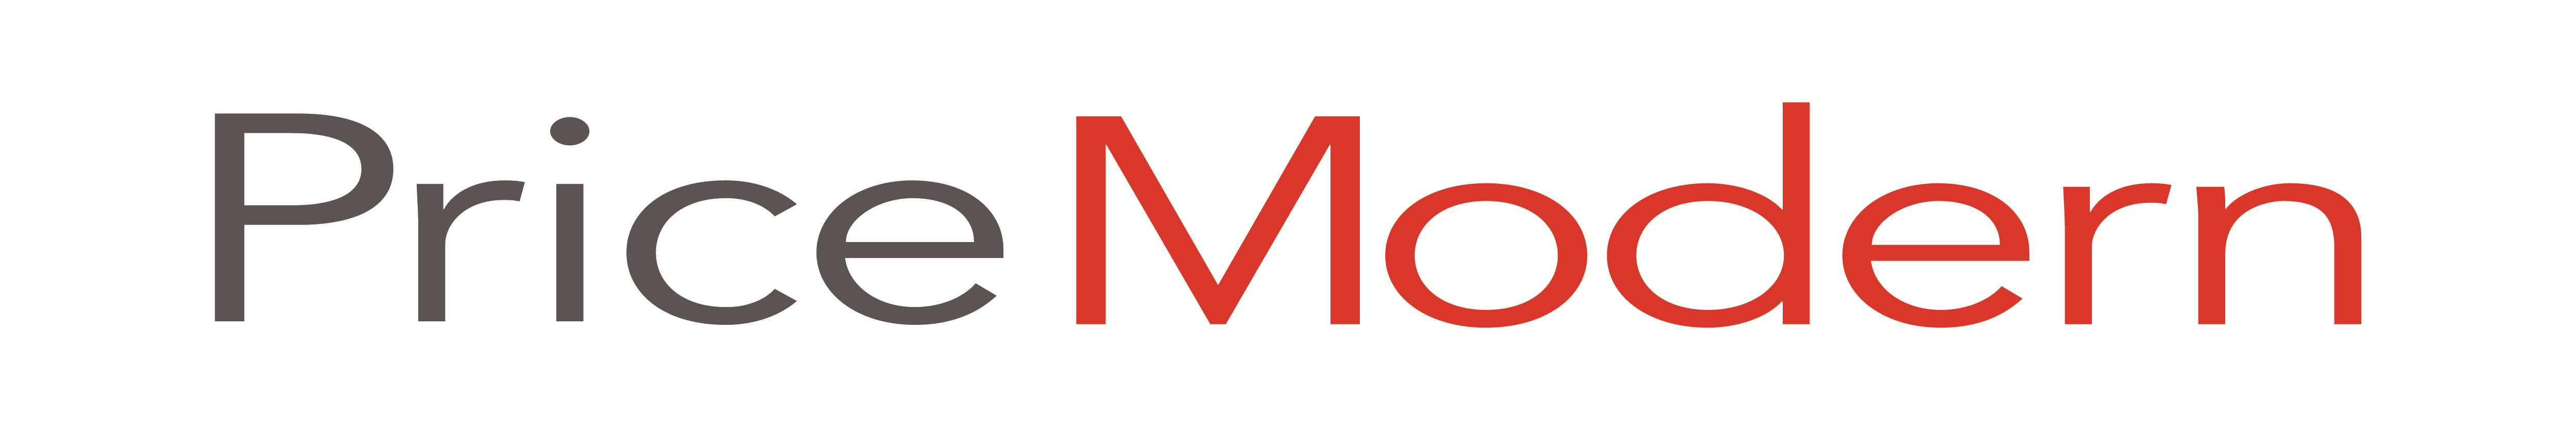 Price Modern logo